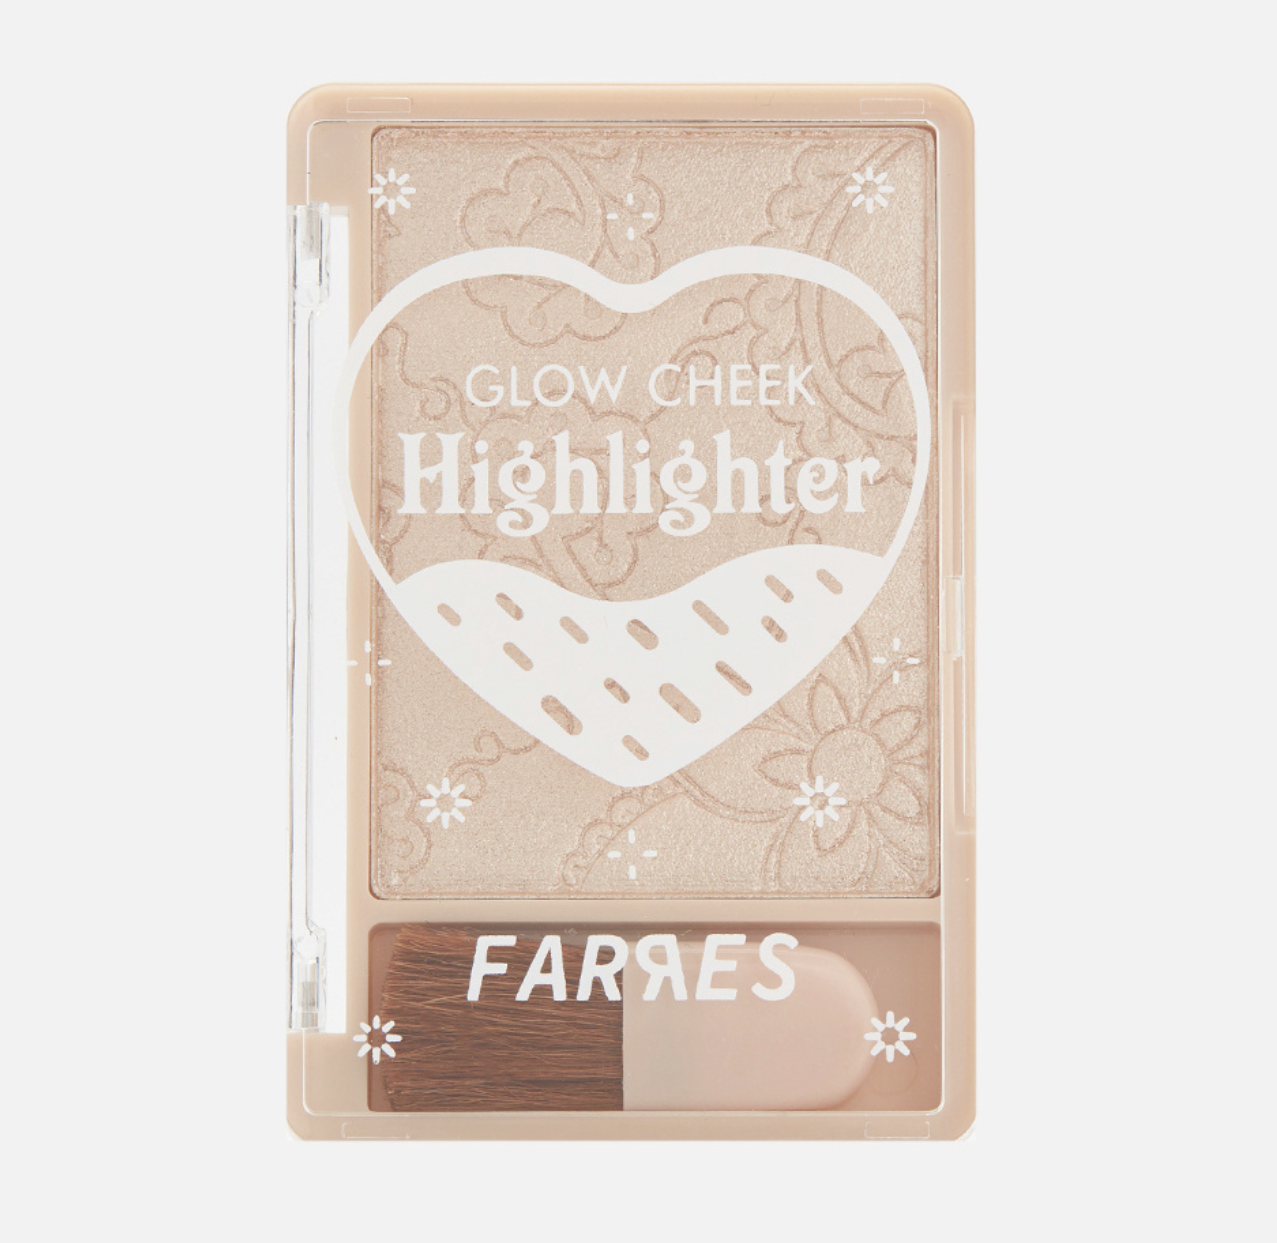   / Farres -    Glow Cheek Highlighter 3205-02, 9,6 